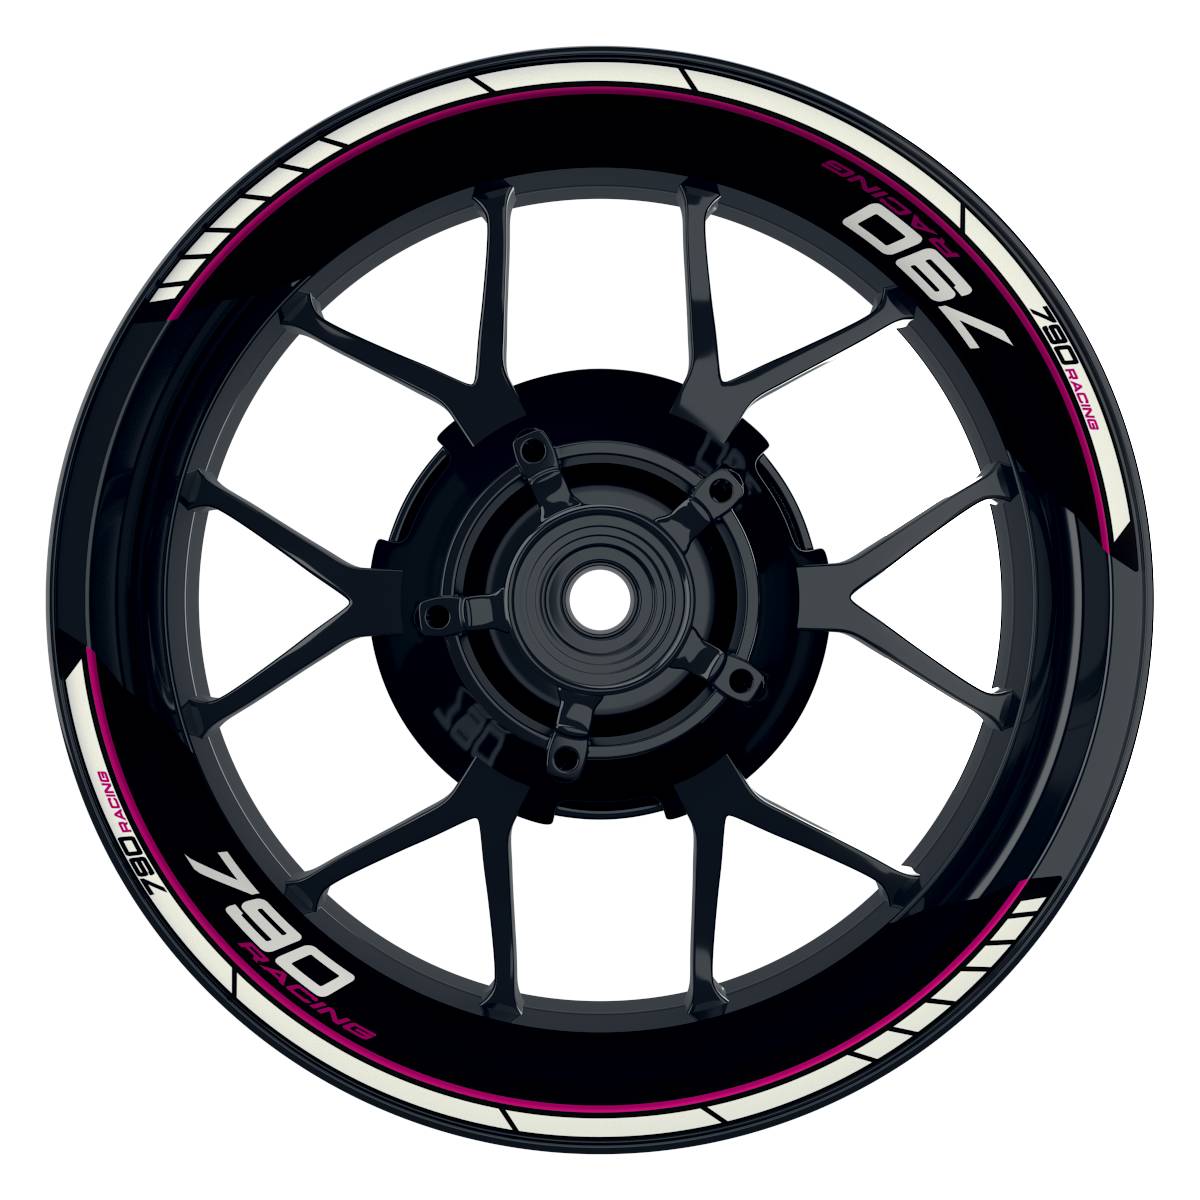 KTM Racing 790 Clean schwarz pink Frontansicht